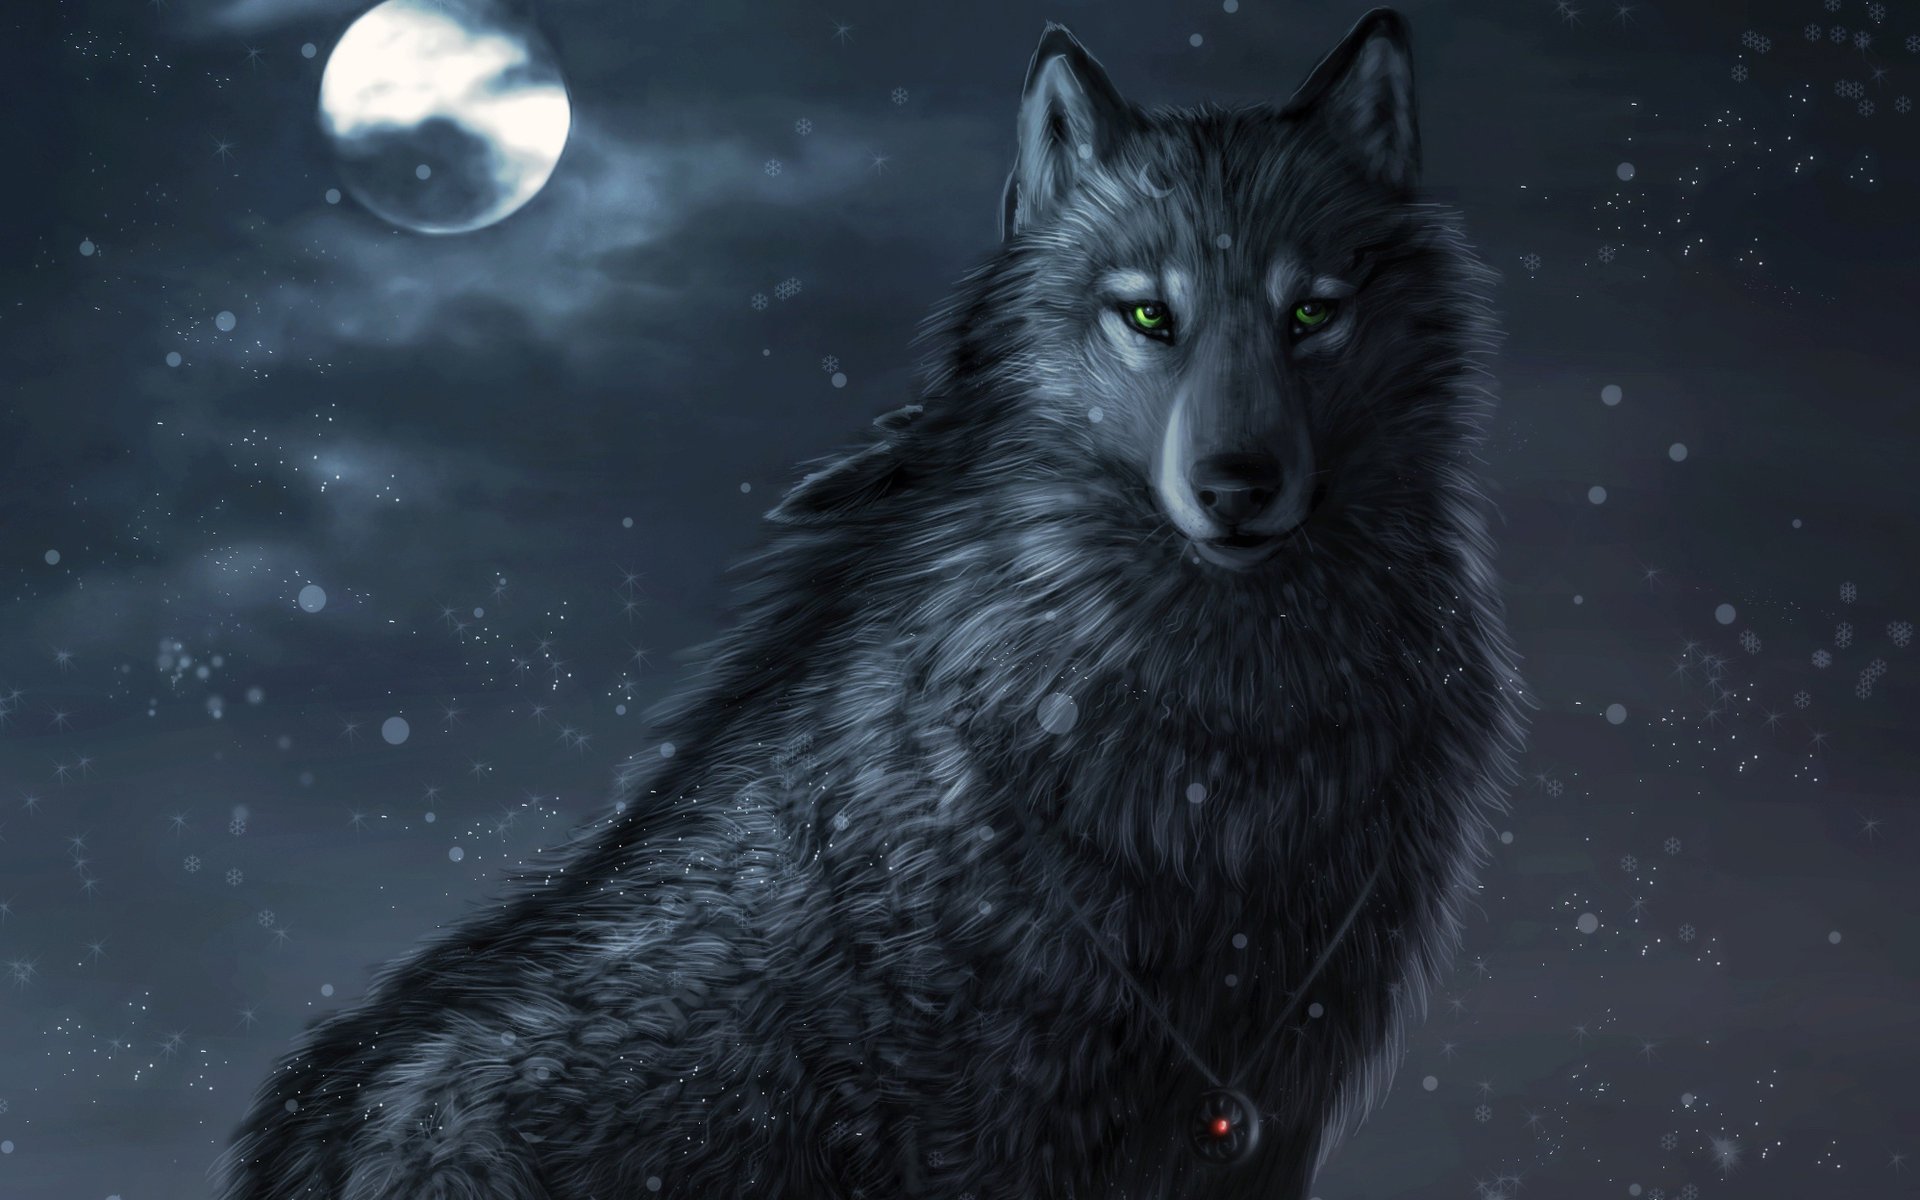 Обои с тегом:winter night, луна, art, ночь, волк, снег, амулет.